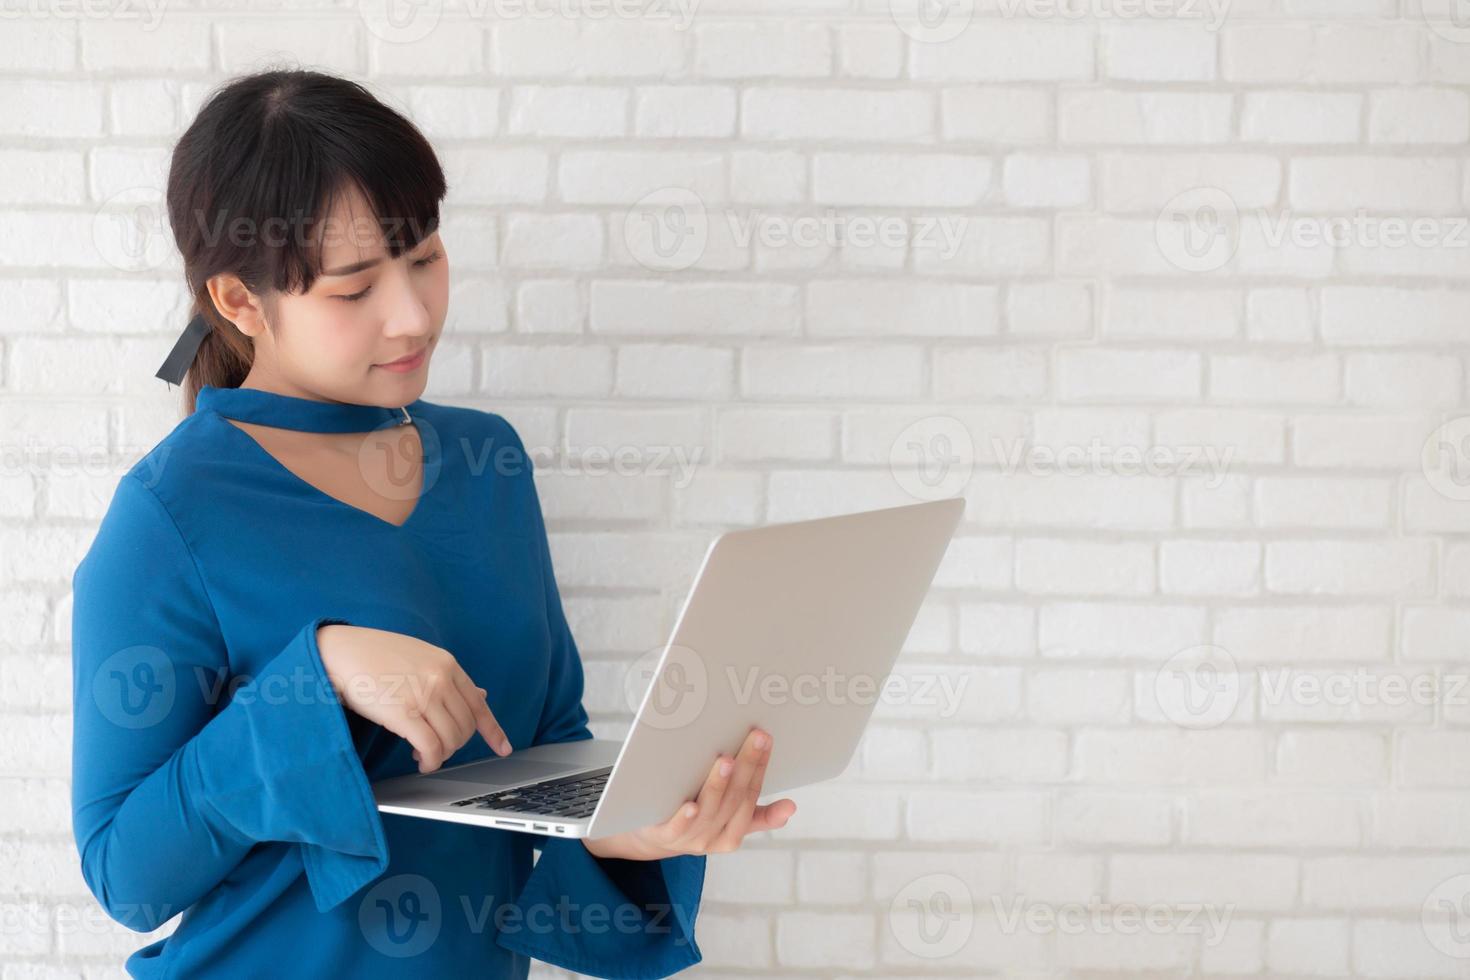 hermoso retrato mujer joven asiática sonríe usando una computadora portátil en el lugar de trabajo sobre fondo de cemento, chica feliz con la computadora en línea, estilo de vida y concepto de negocio independiente. foto